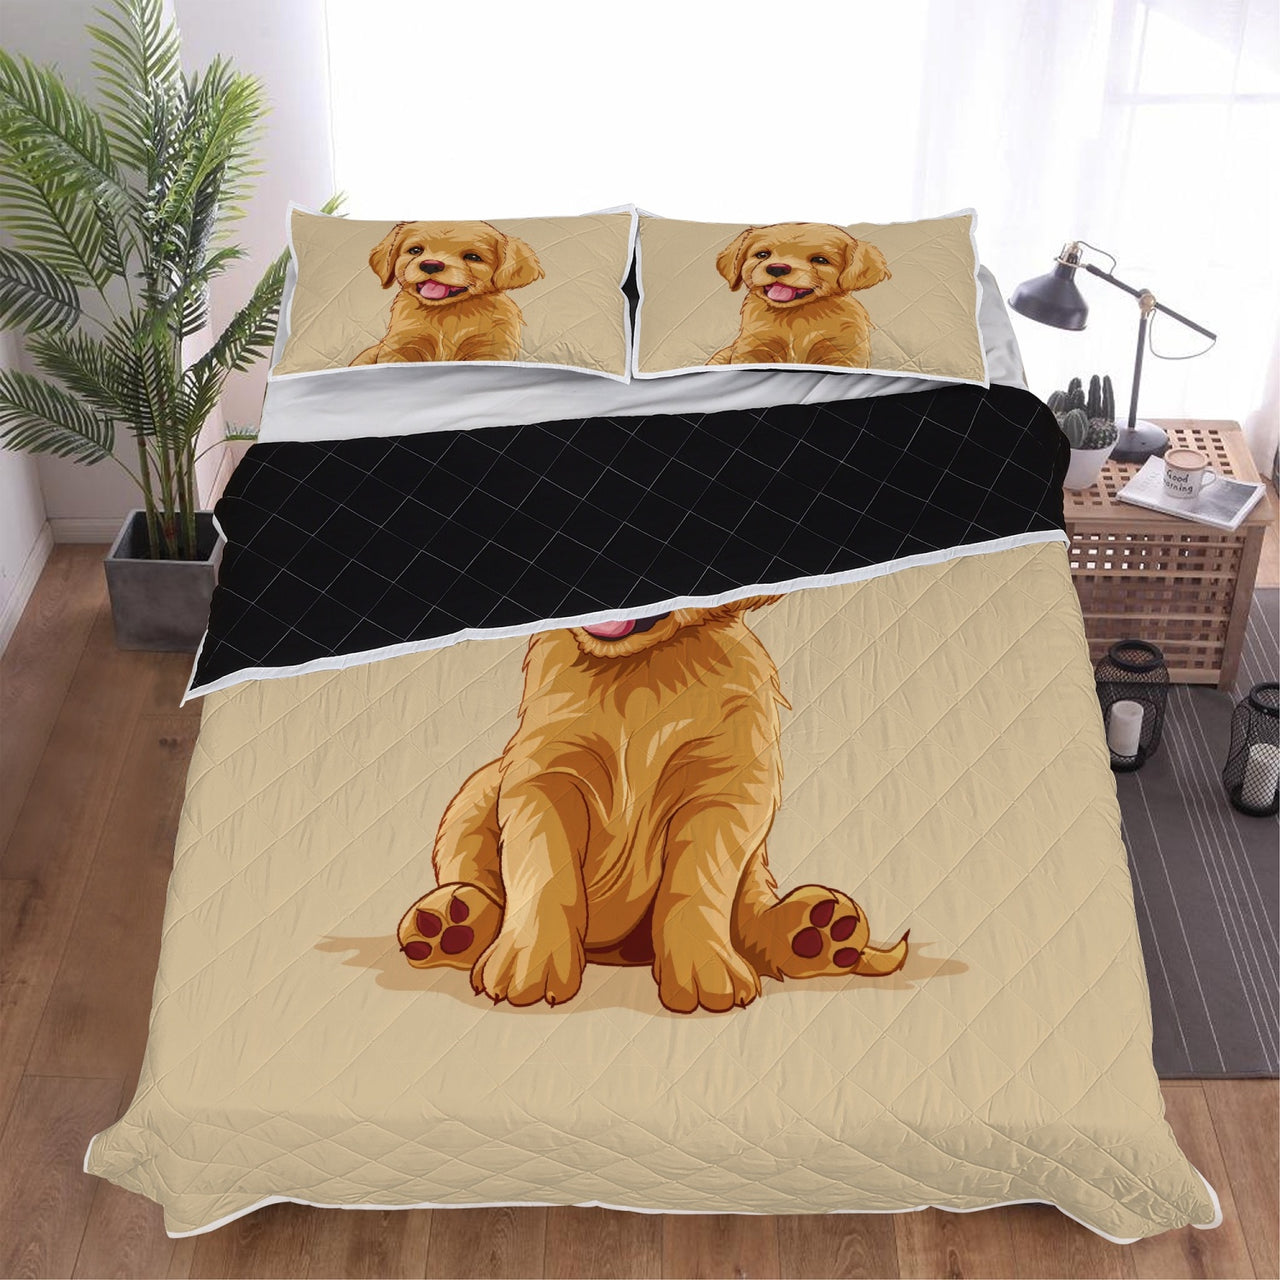 Cute Golden Retriever Bed Set